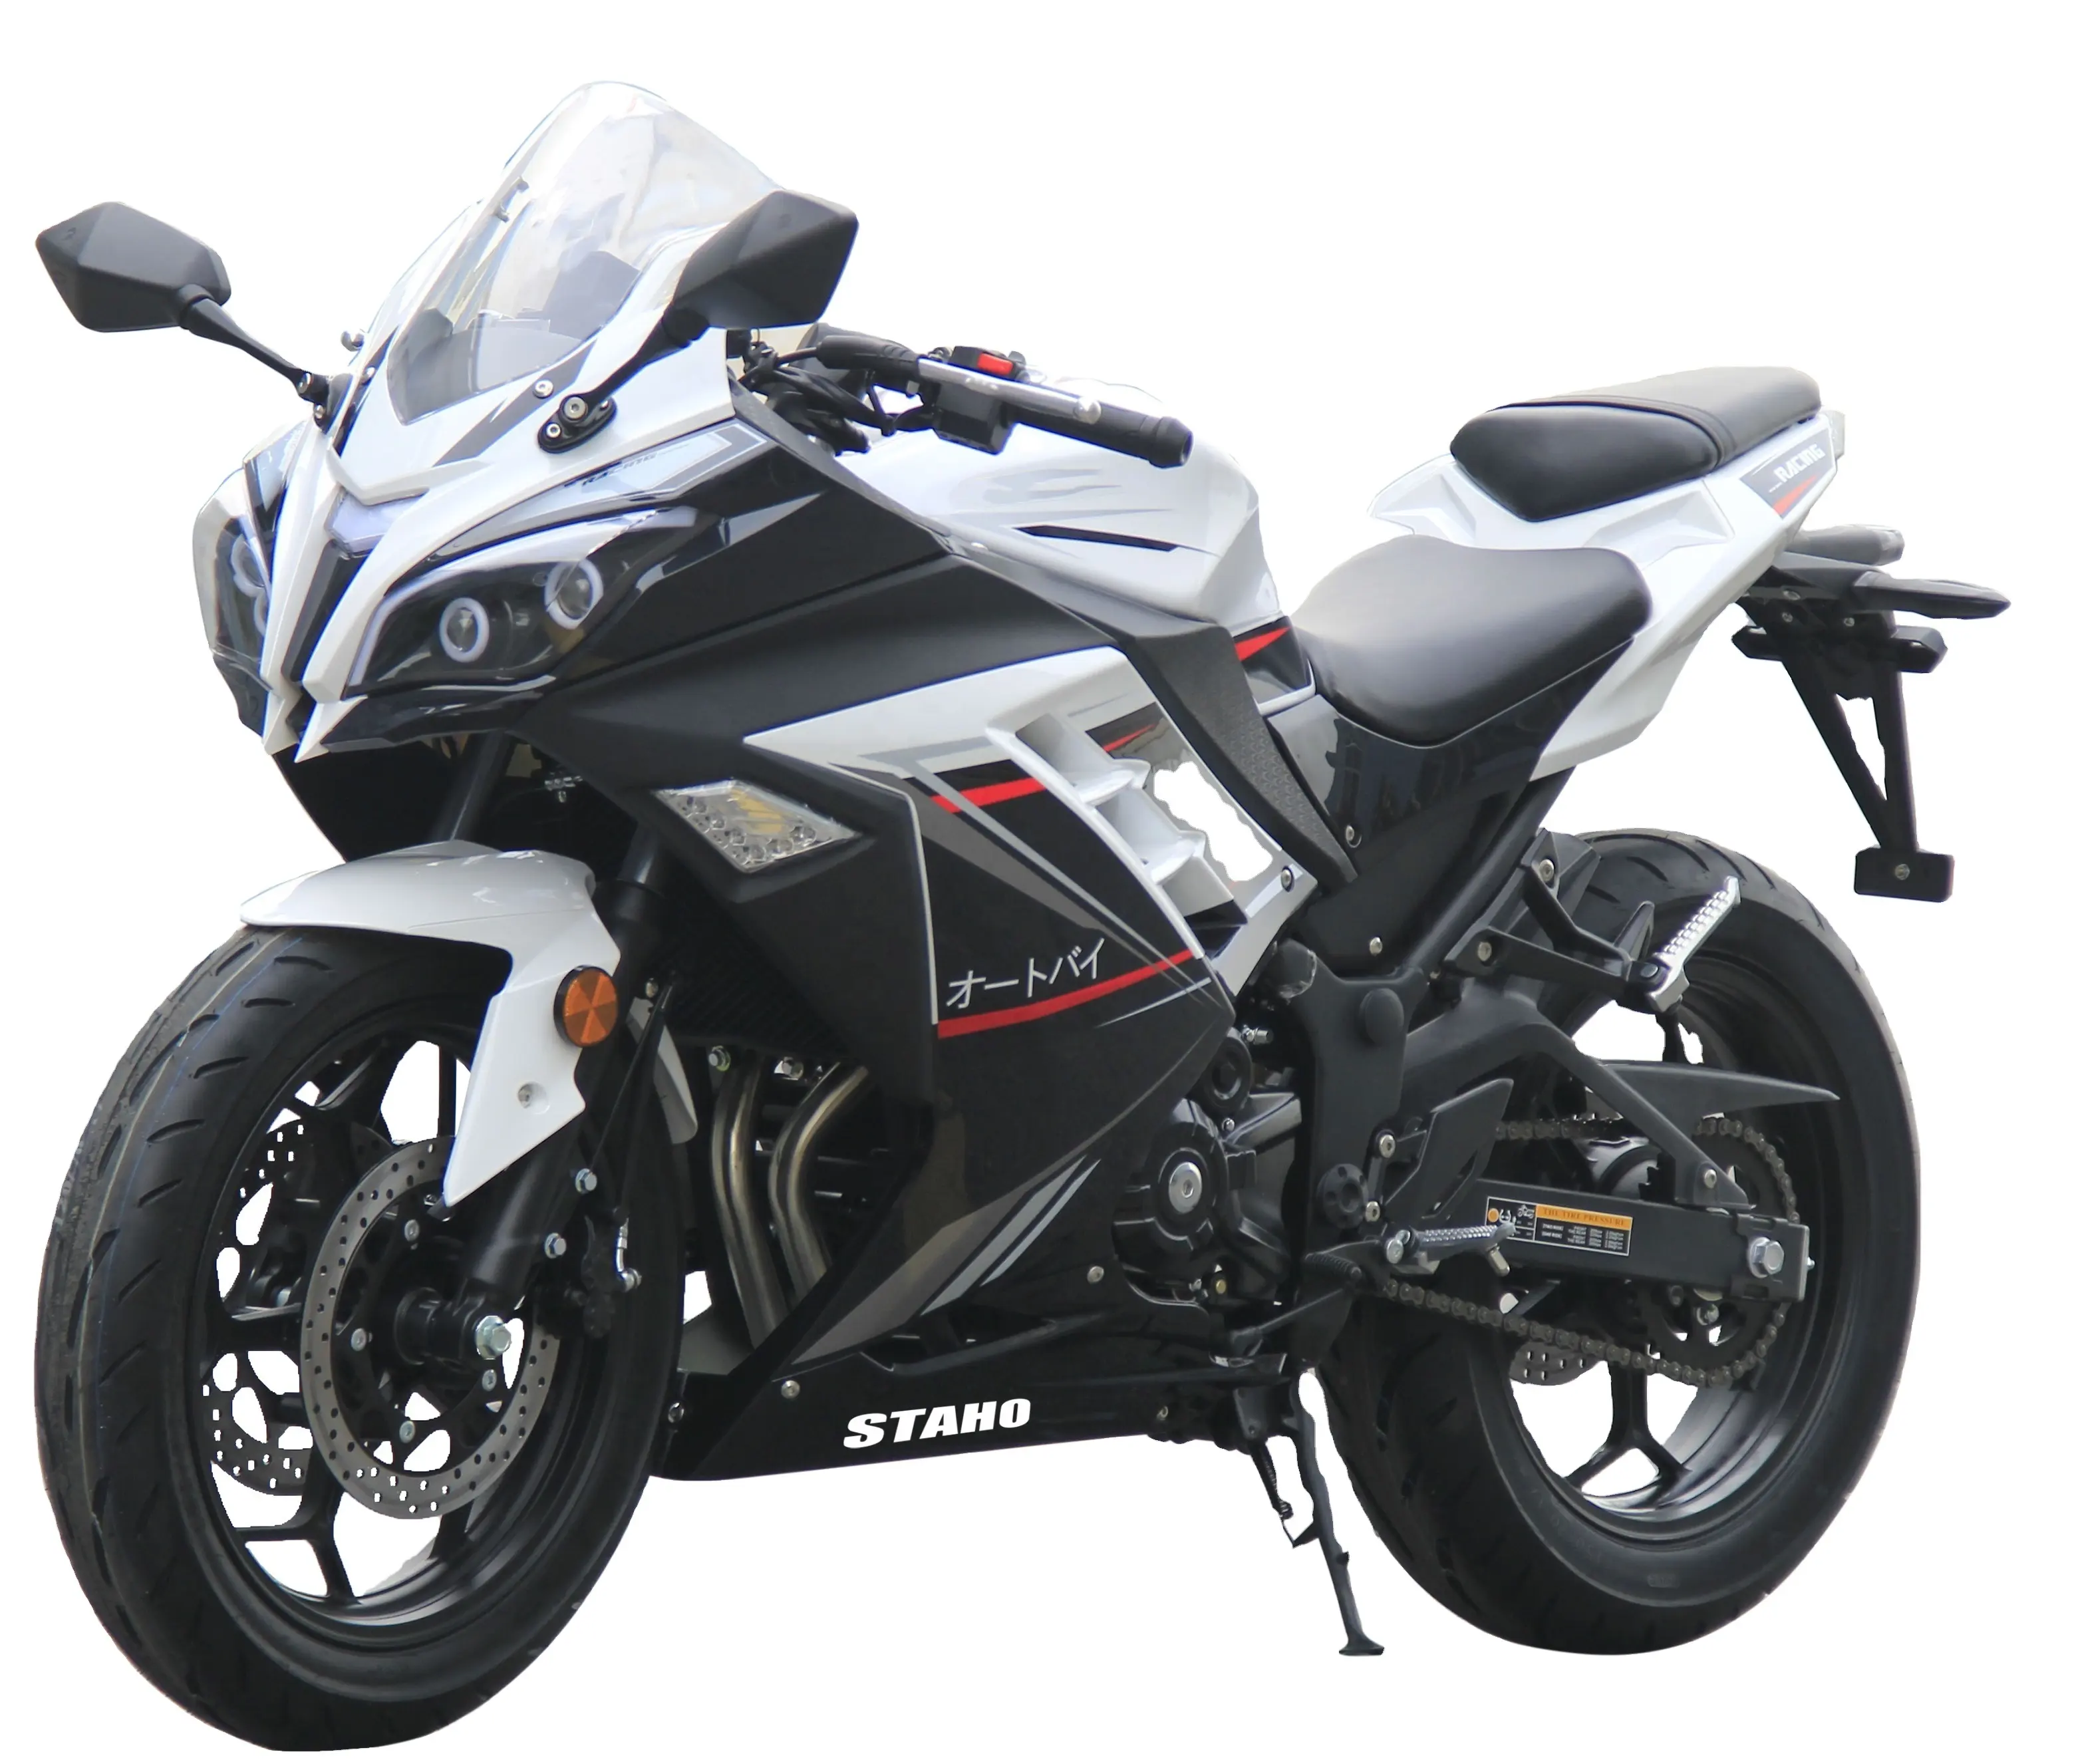 دراجة نارية RZ XRZ 200CC 250CC عالية السرعة, بسعر الجملة 2021 ، مع محرك ZONGSHEN ، تبريد المياه 400CC ، EFI ABS ، محرك غاز ، سباق الدراجات النارية